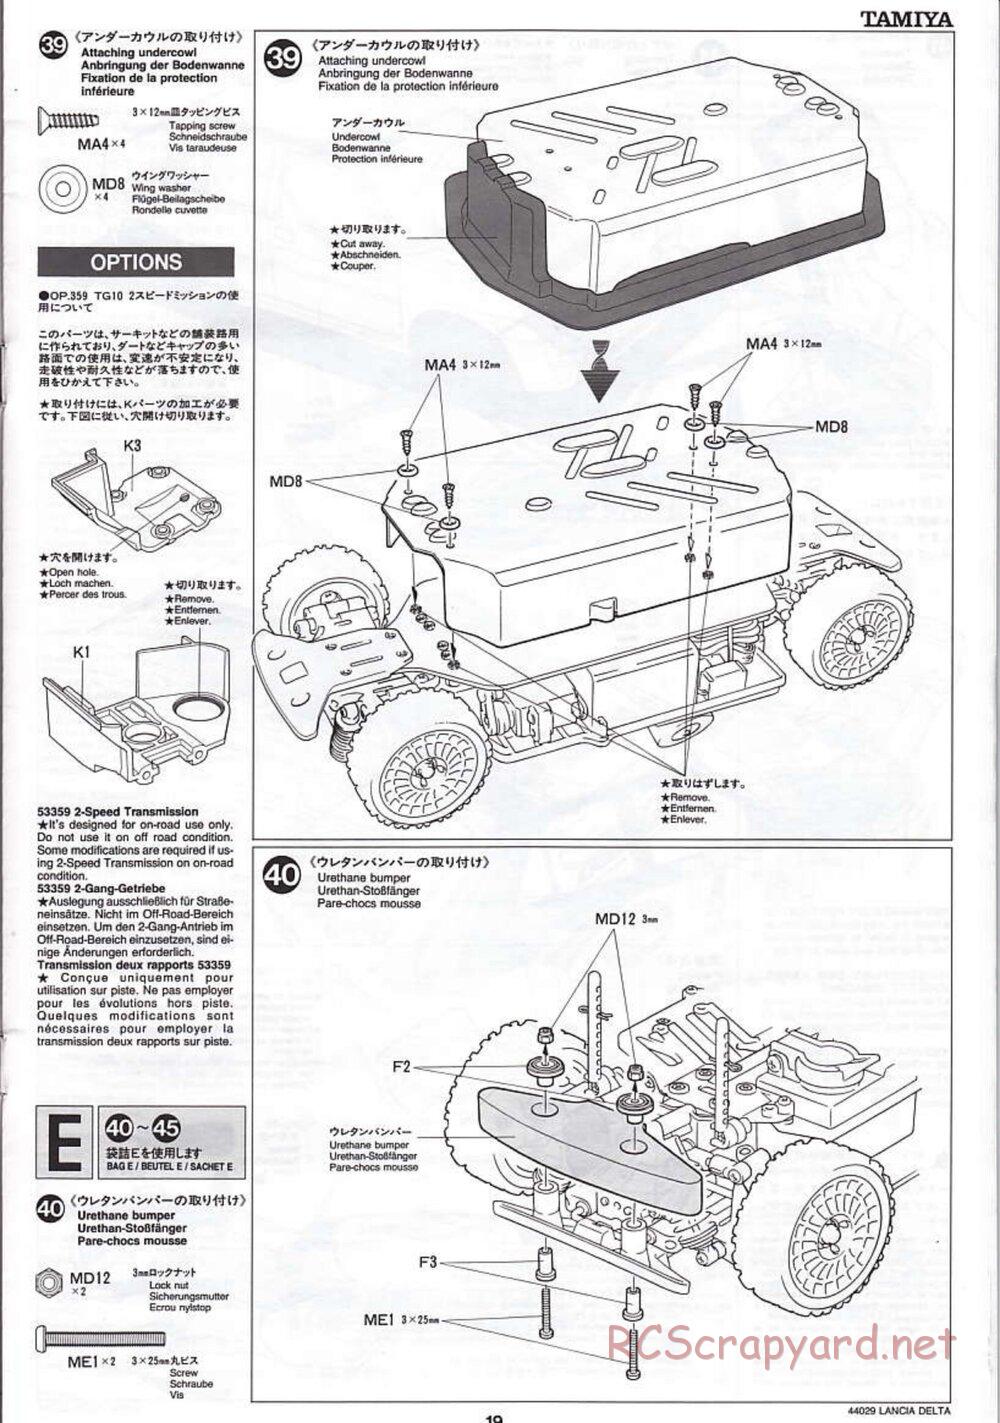 Tamiya - Lancia Delta HF Integrale - TG10 Mk.1 Chassis - Manual - Page 19